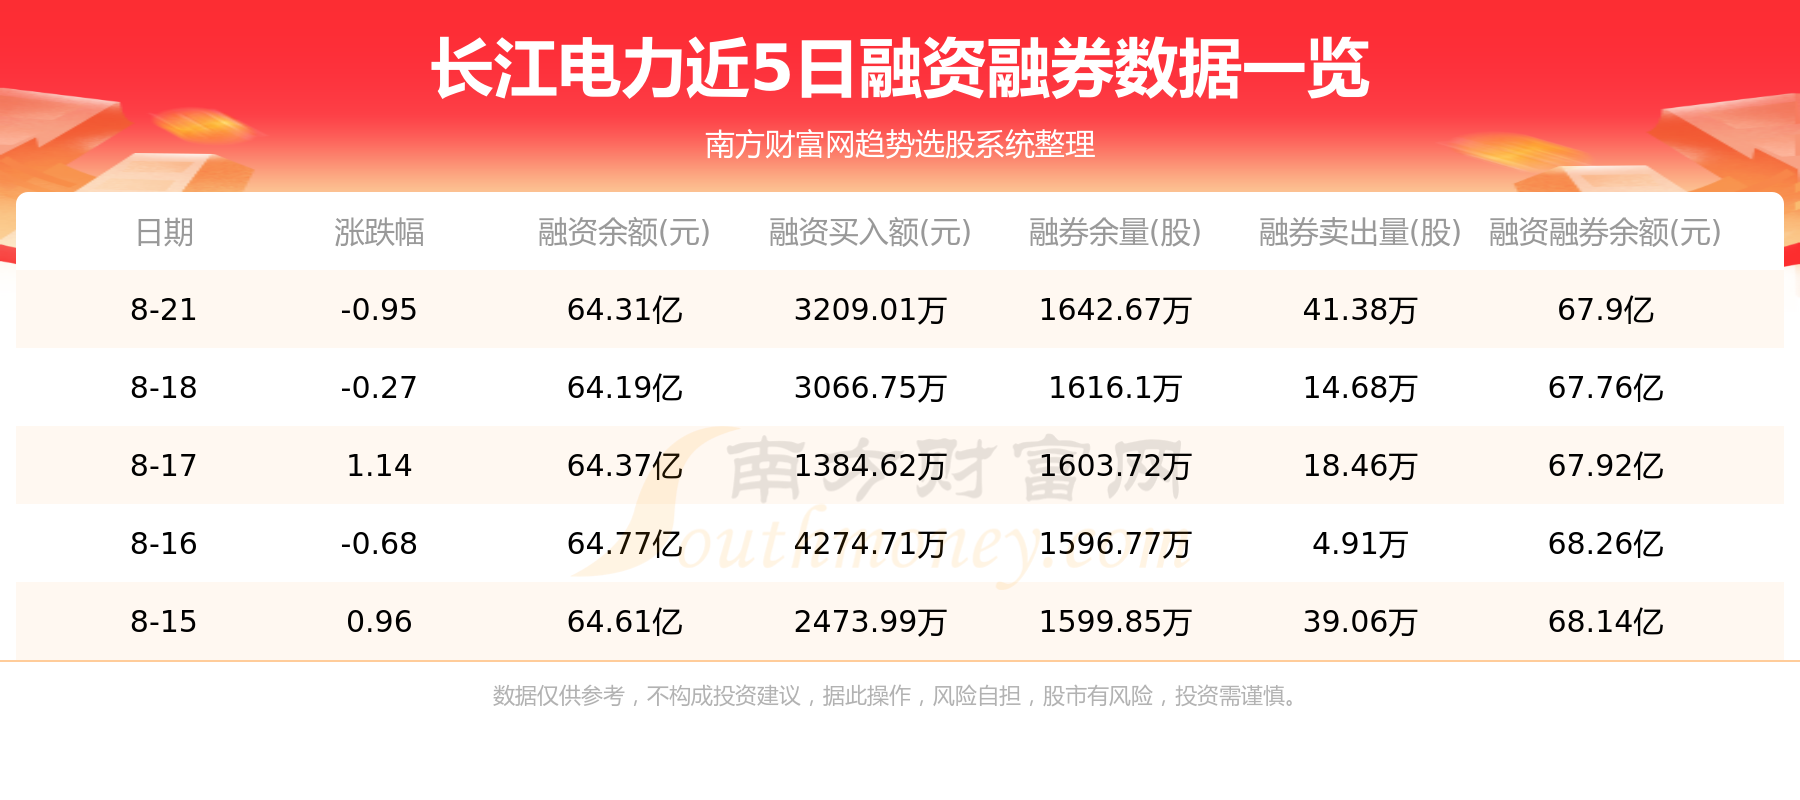 【8月22日资金流向】长江电力资金流向一览表